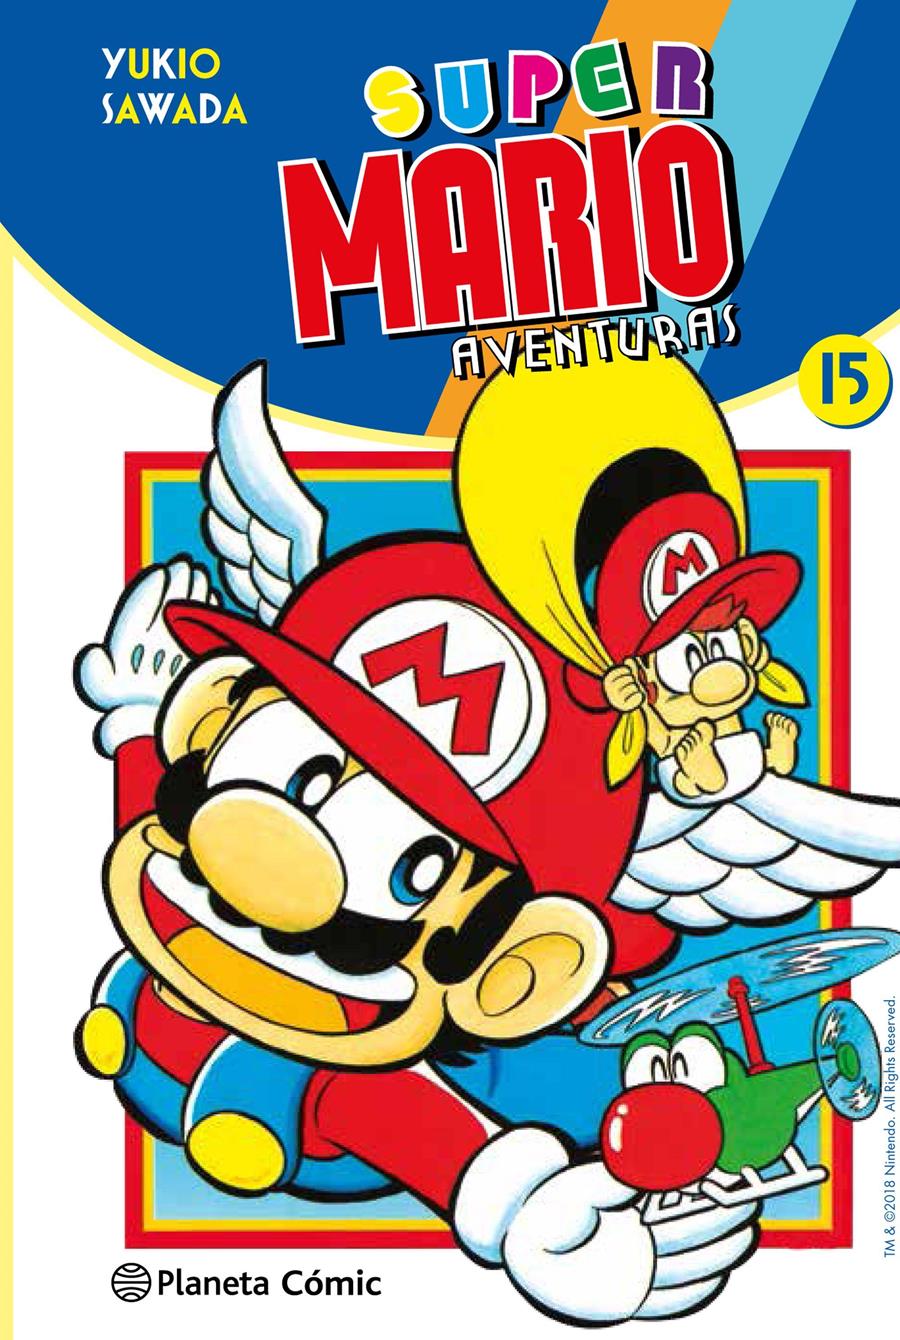 Super Mario nº 15 | N10182-PLA18 | Yukio Sawada | Terra de Còmic - Tu tienda de cómics online especializada en cómics, manga y merchandising